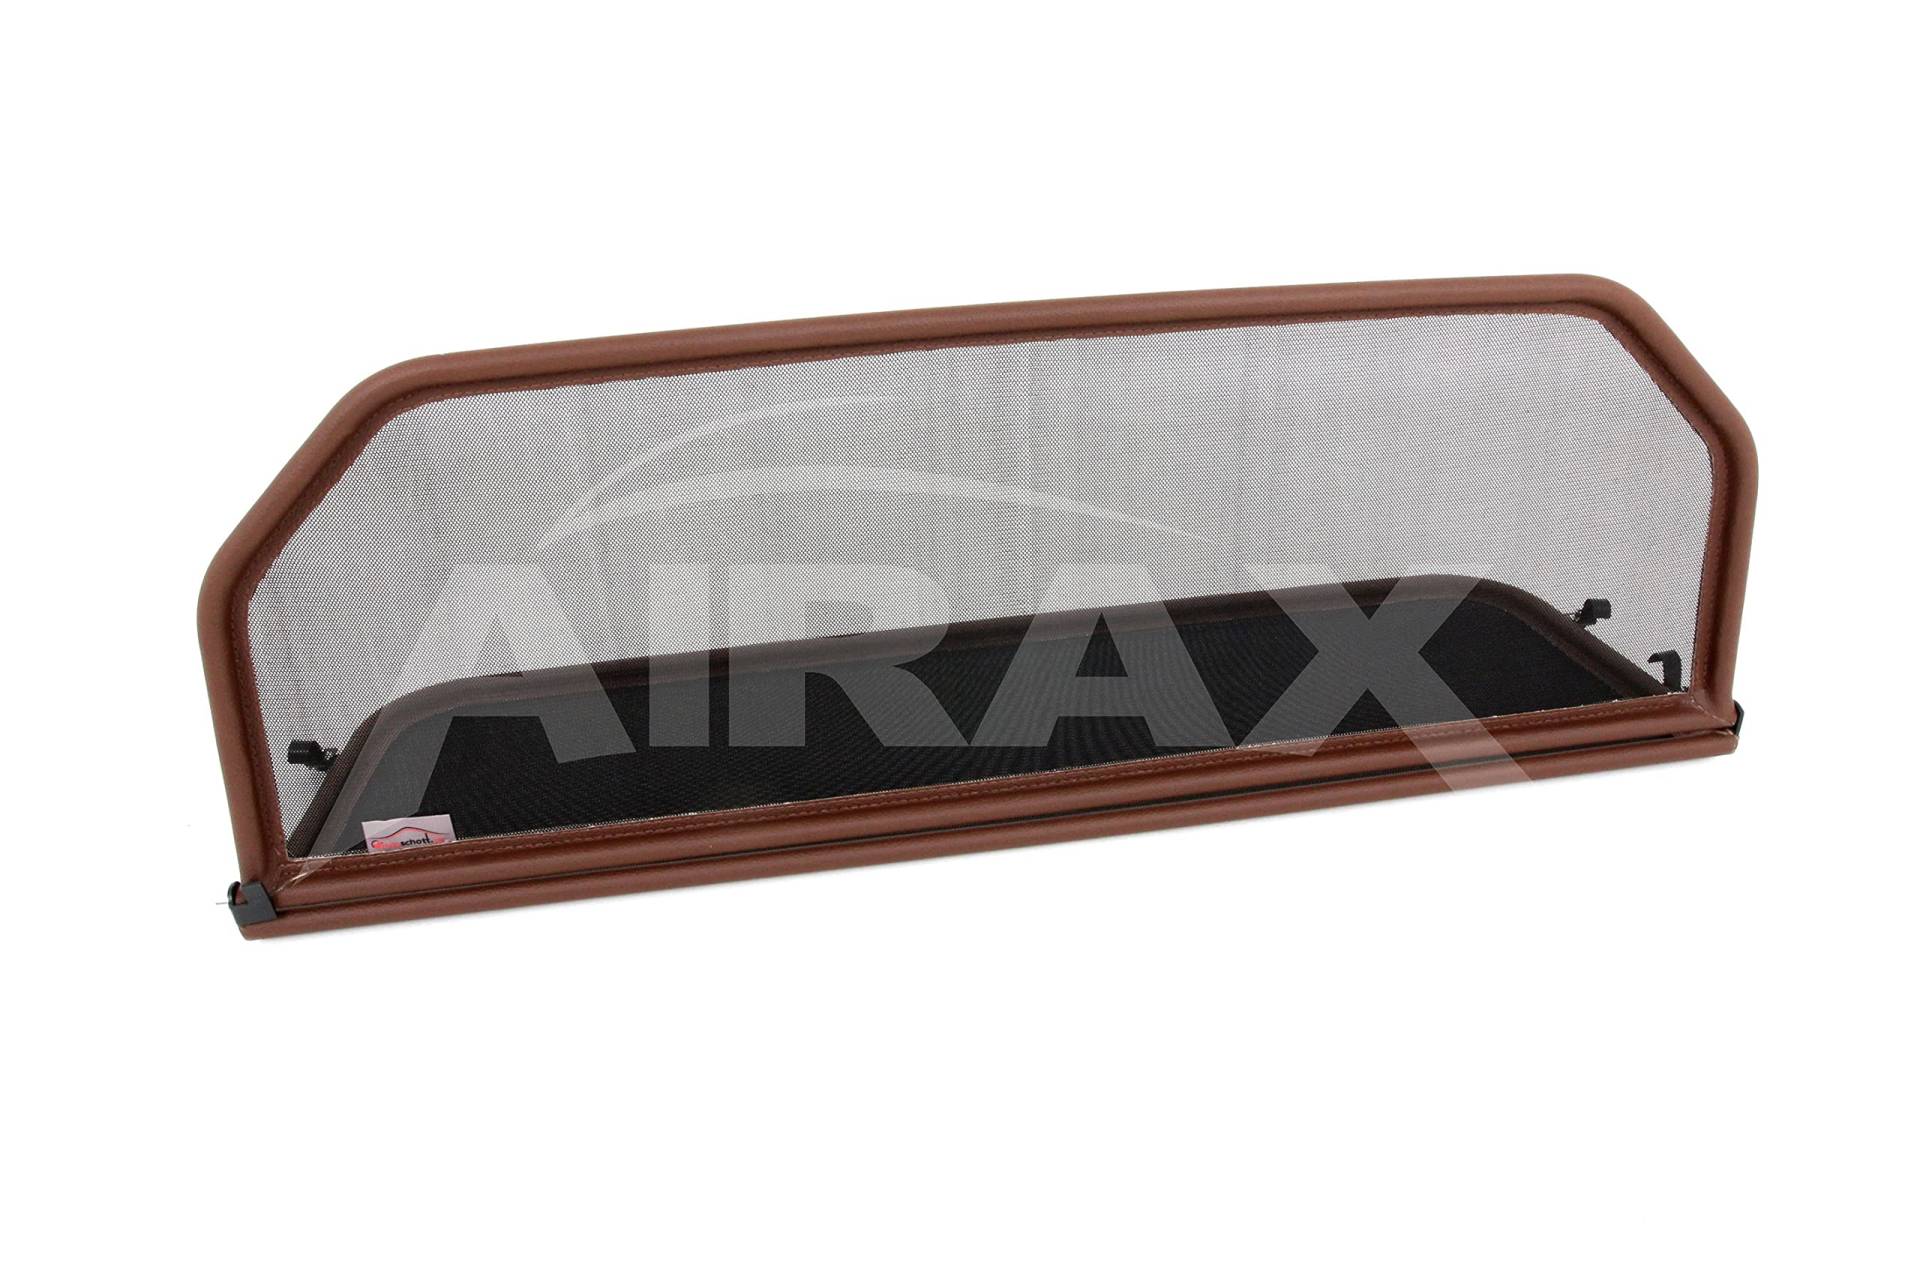 Airax Windschott geeignet für R107 in Braun 280, 300, 350, 380, 420, 450, 560 SL Windabweiser Windscherm Windstop Wind deflector déflecteur de vent von Airax